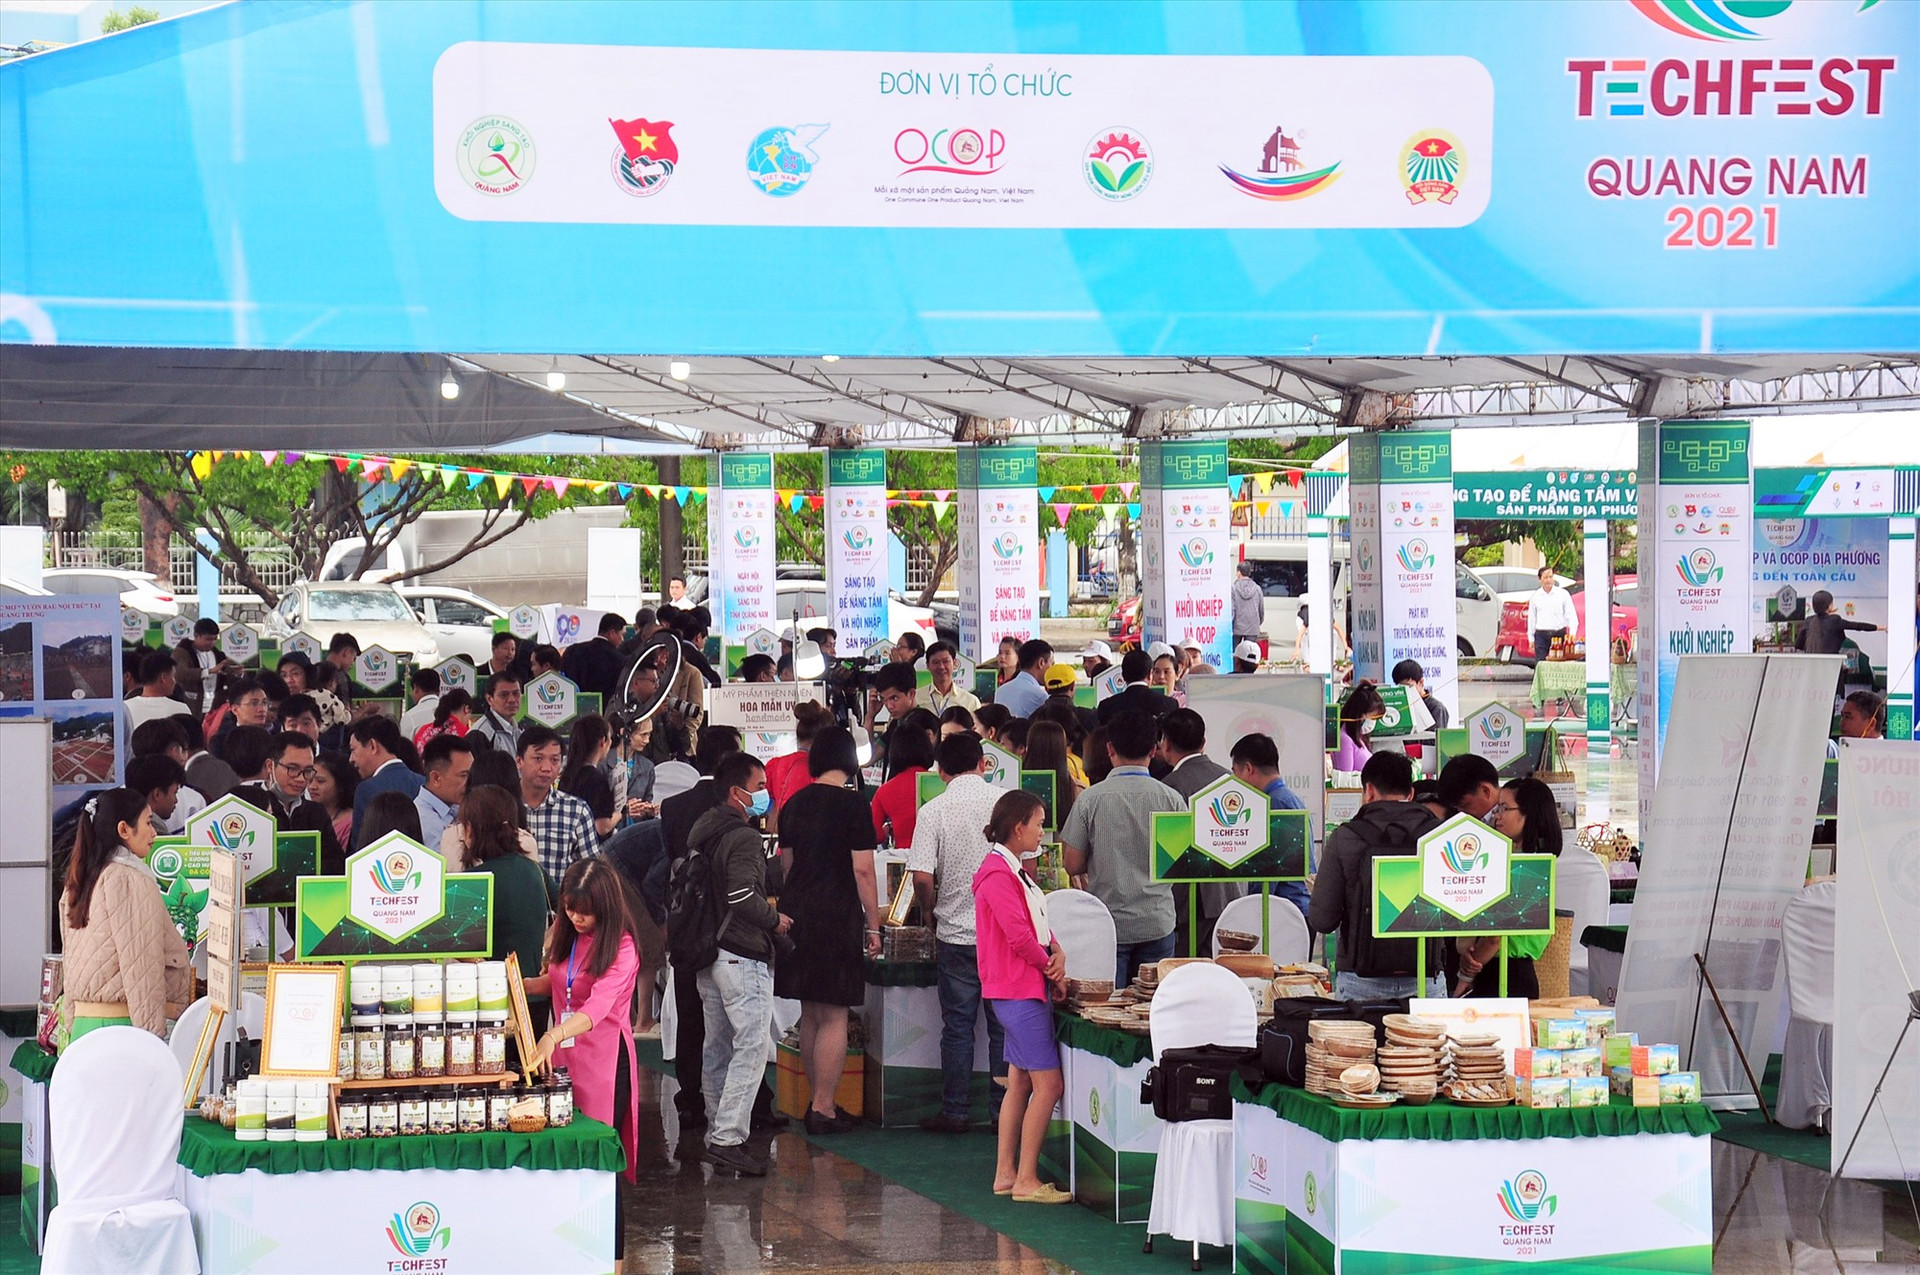 Sự kiện Techfest Quang Nam 2021 quy tụ 100 gian hàng với hơn 200 sản phẩm OCOP, sản phẩm khởi nghiệp... khu vực miền Trung - Tây Nguyên. Ảnh: ANH CÔNG